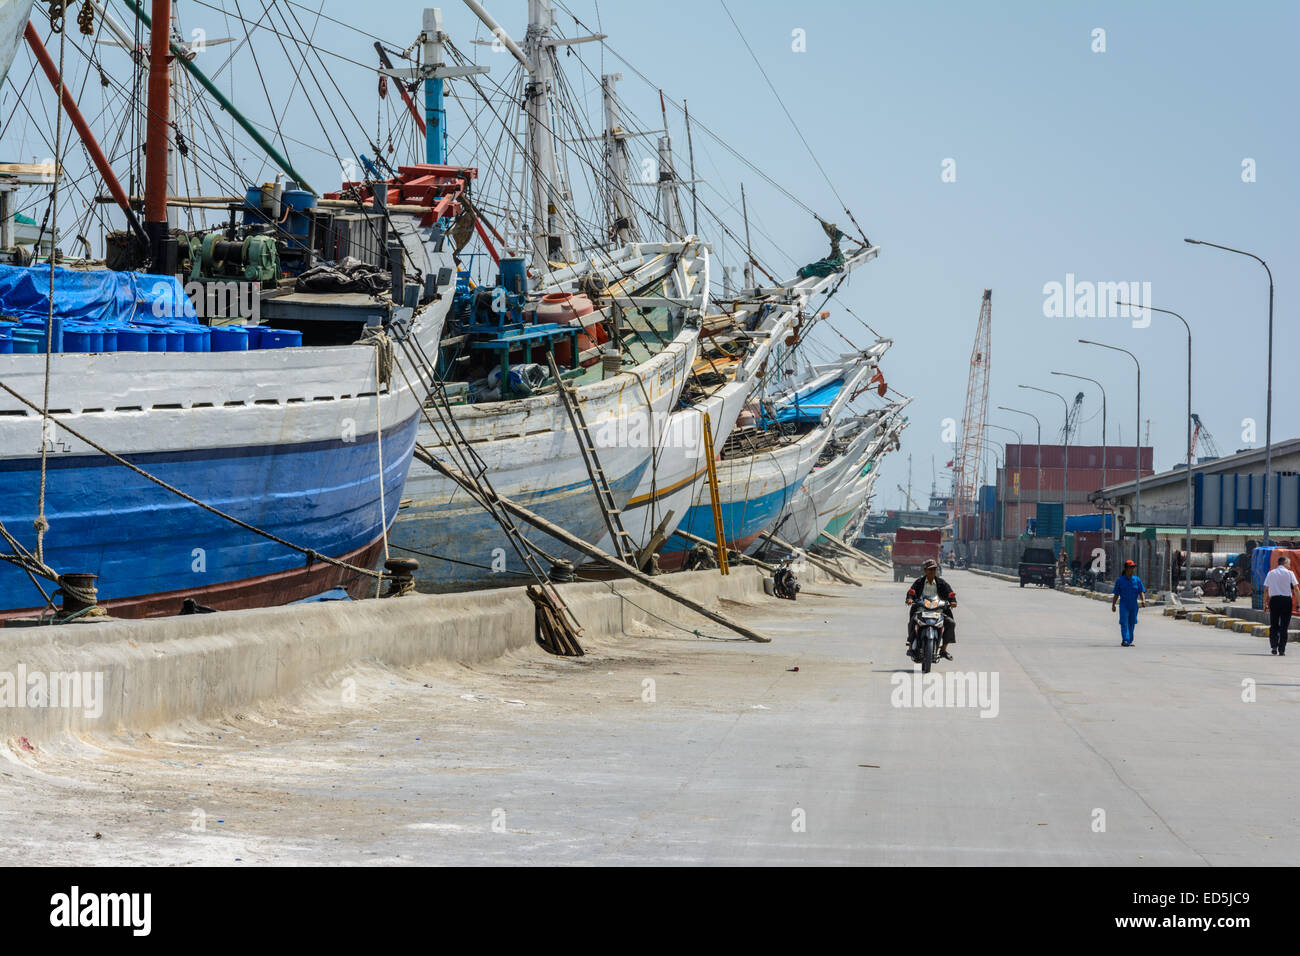 Pinsi des navires dans le vieux port de Sunda Kelapa, au nord de Jakarta, Indonésie Banque D'Images